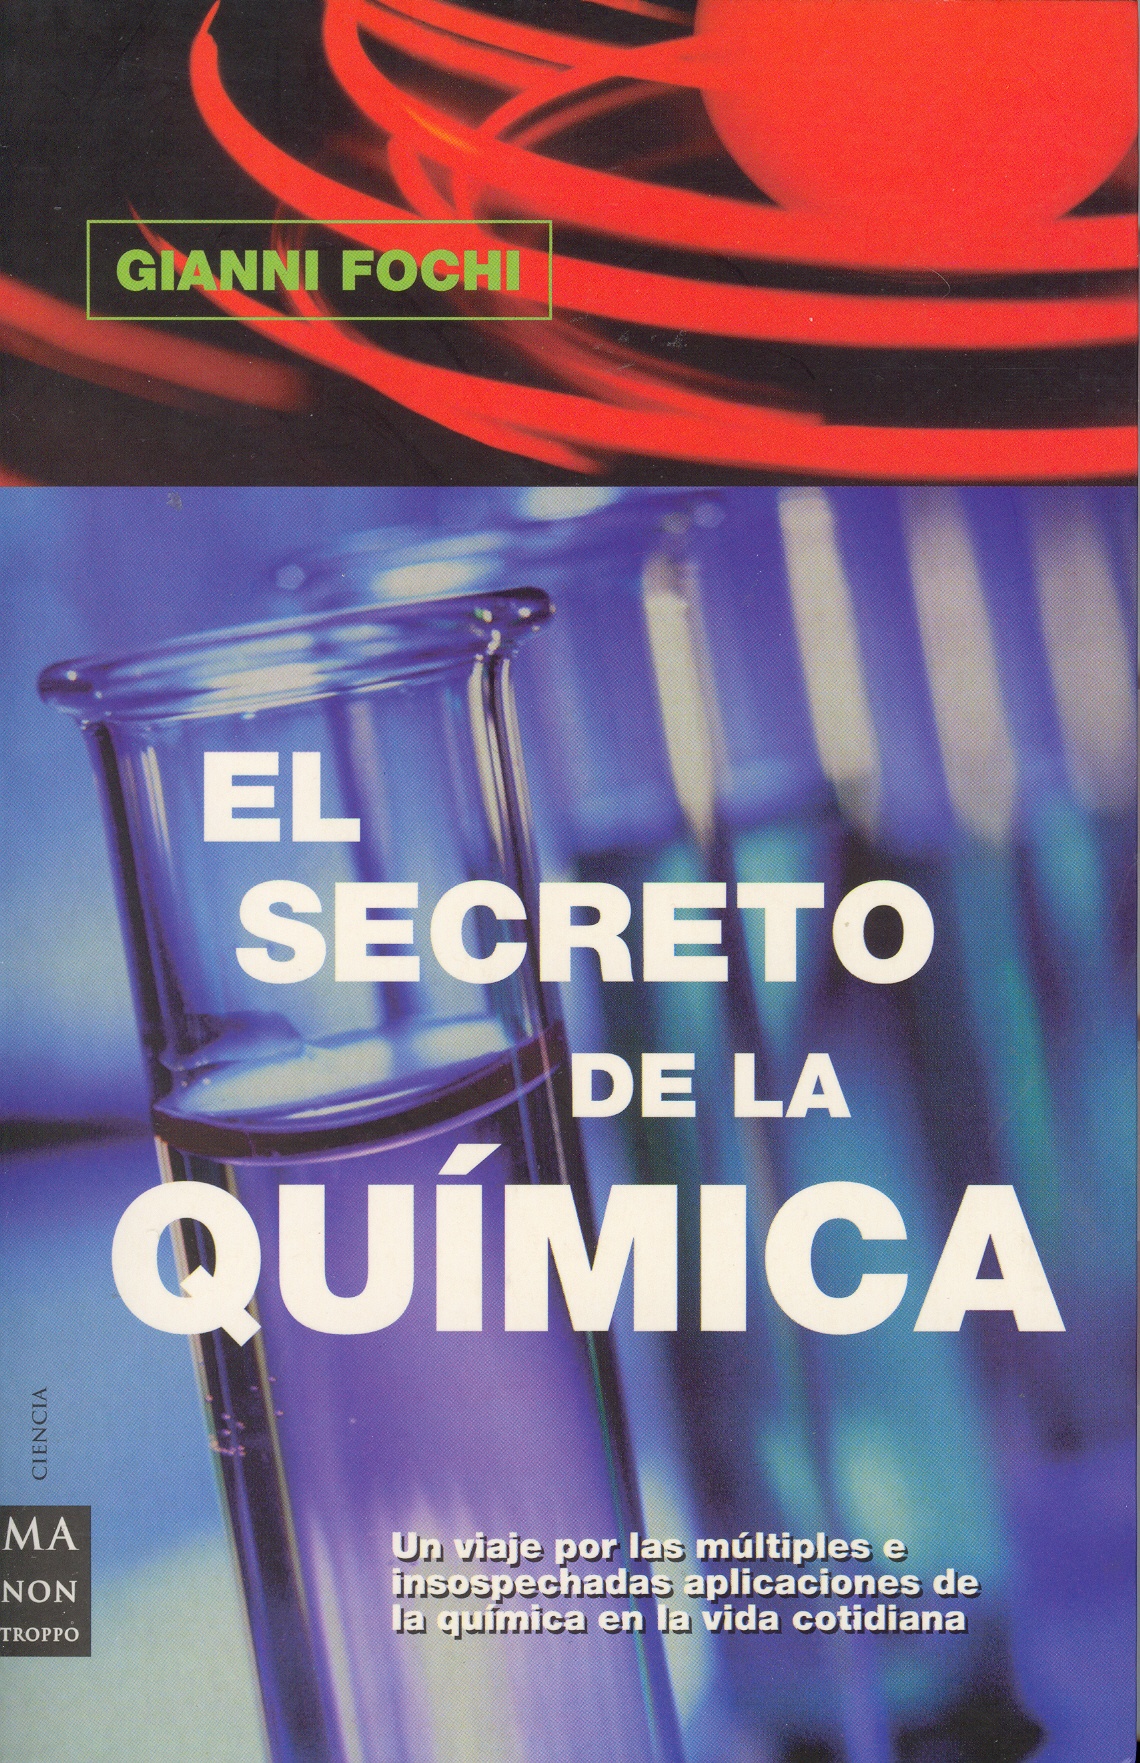 el secreto la química (2007-29) – (Curioso pero inútil)